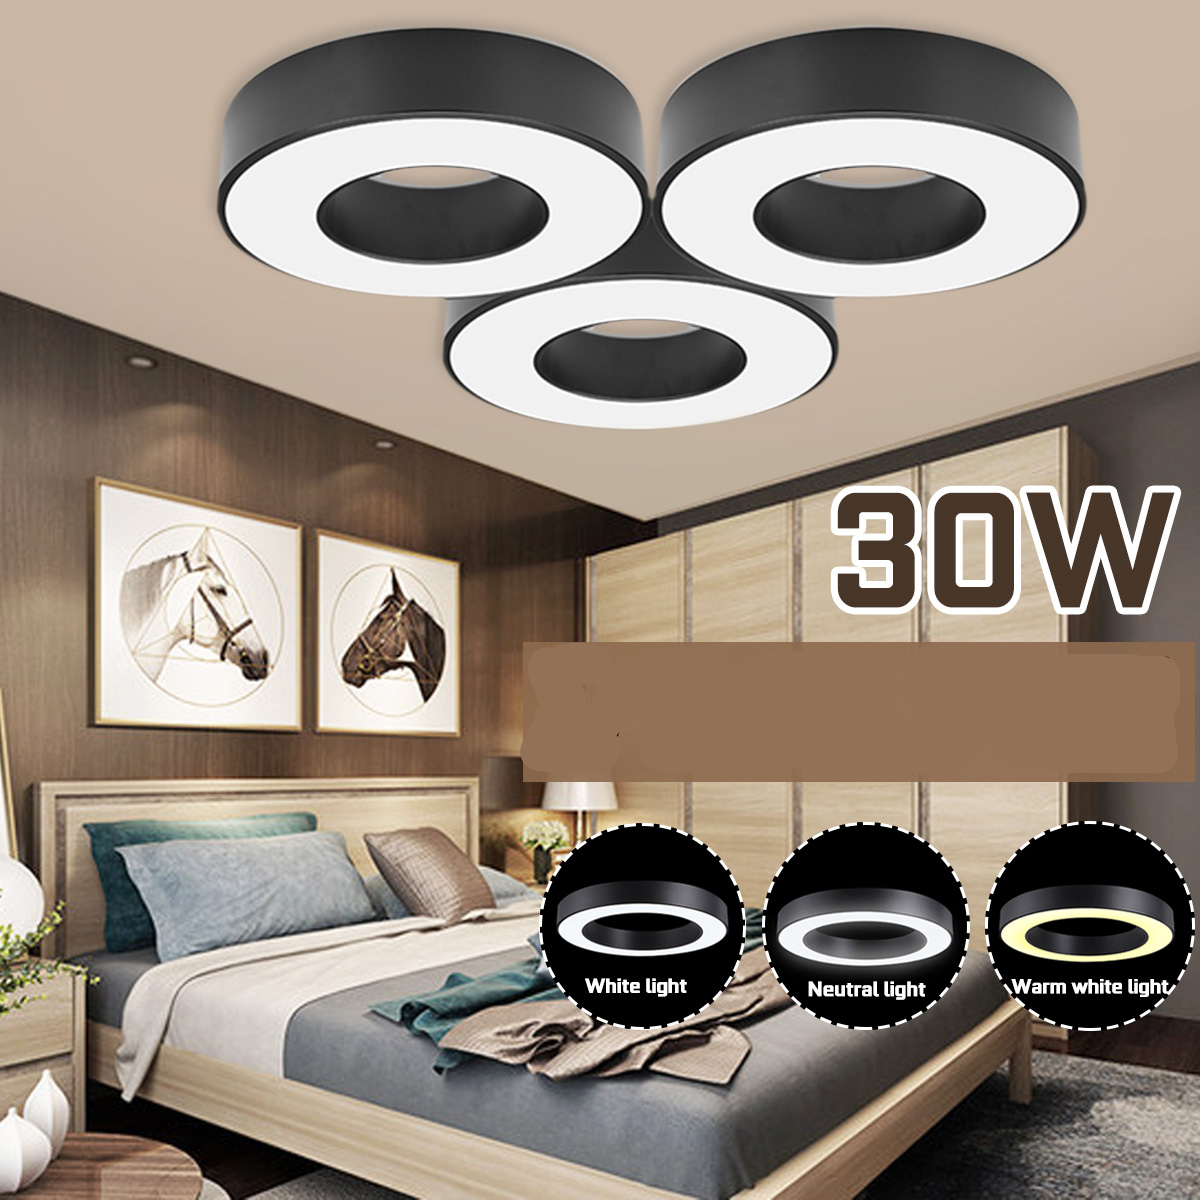 30W-LED-Ceiling-Light-Round-shape-Panel-Light-Home-3-Colors-Lighting-110V-220V-1604735-1